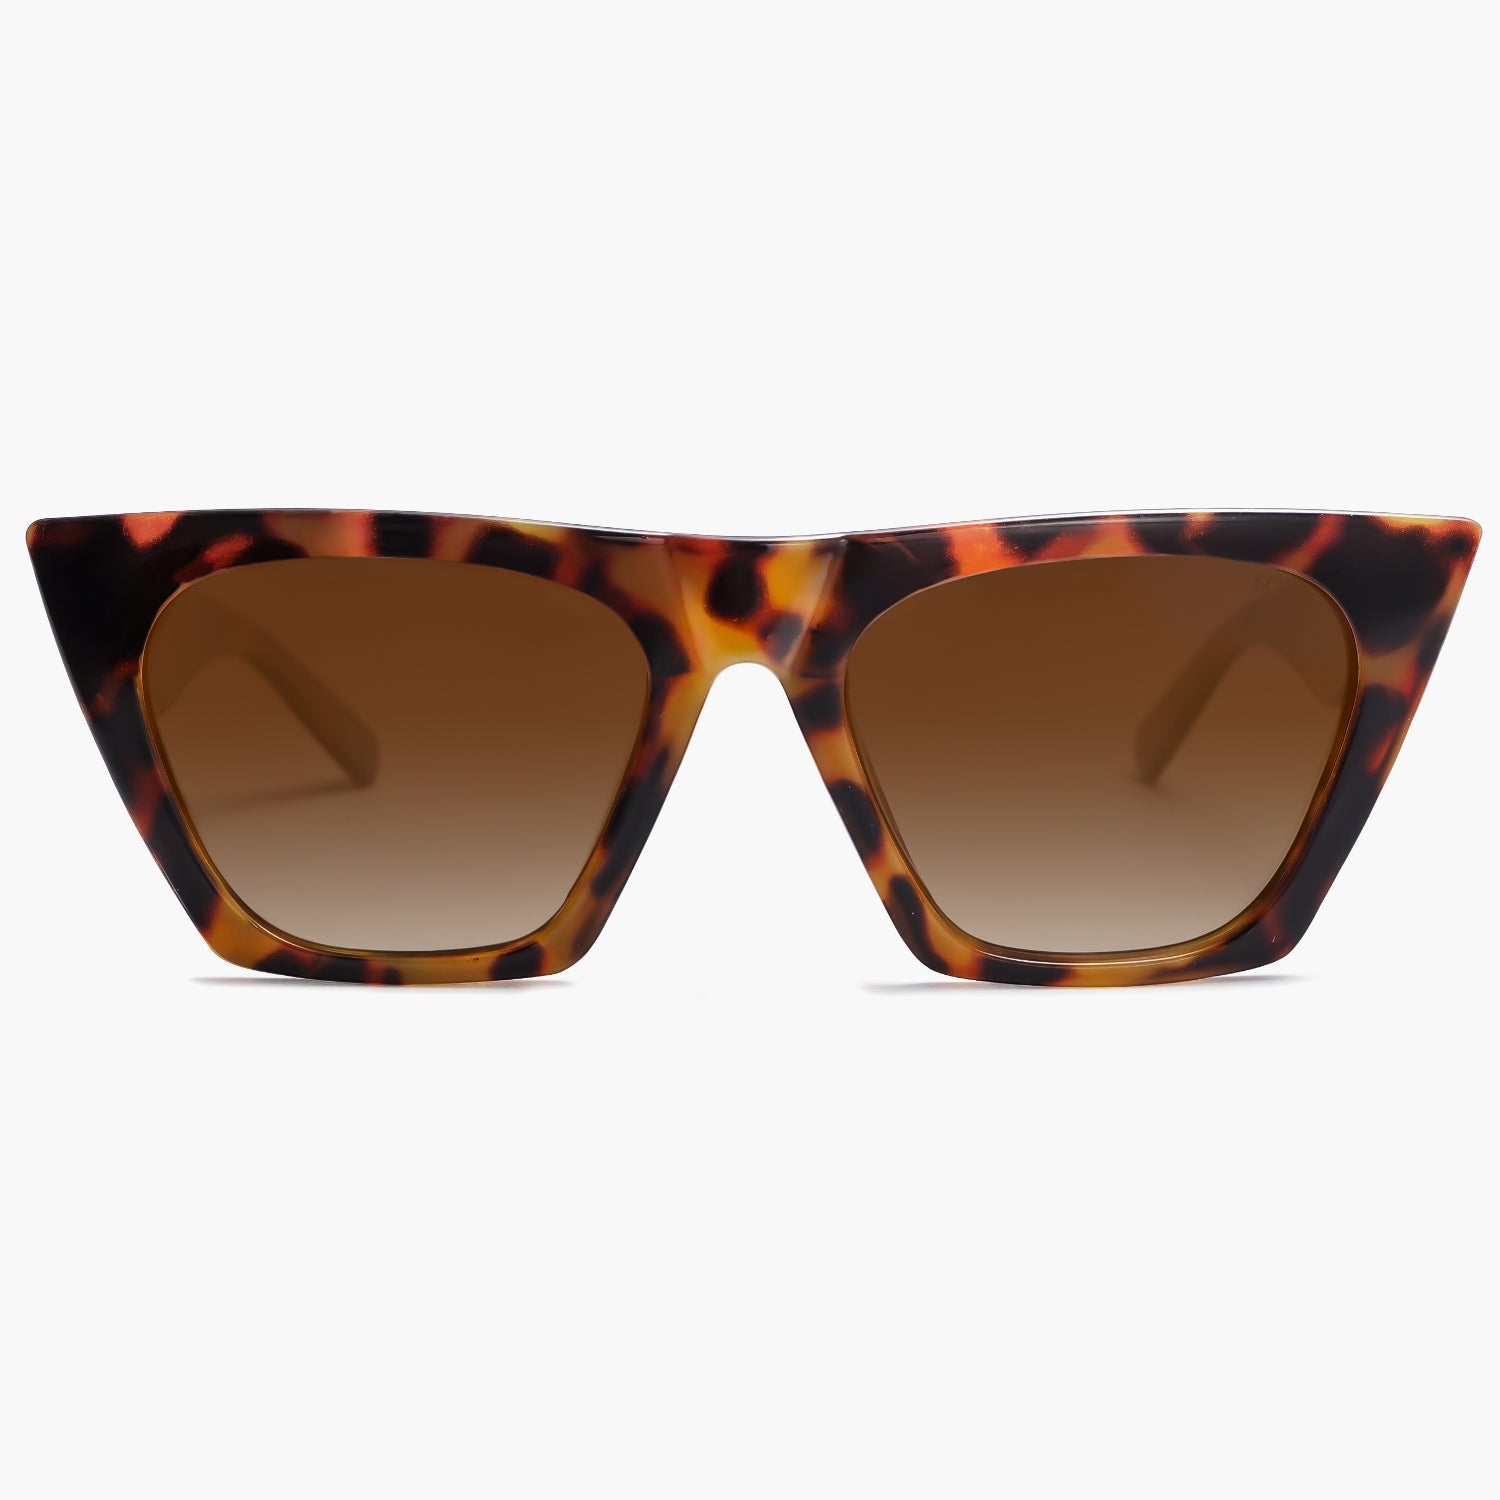 Buy Tortoise Frame Brown Lens Cat Eye Sunglasses for Women, Bella